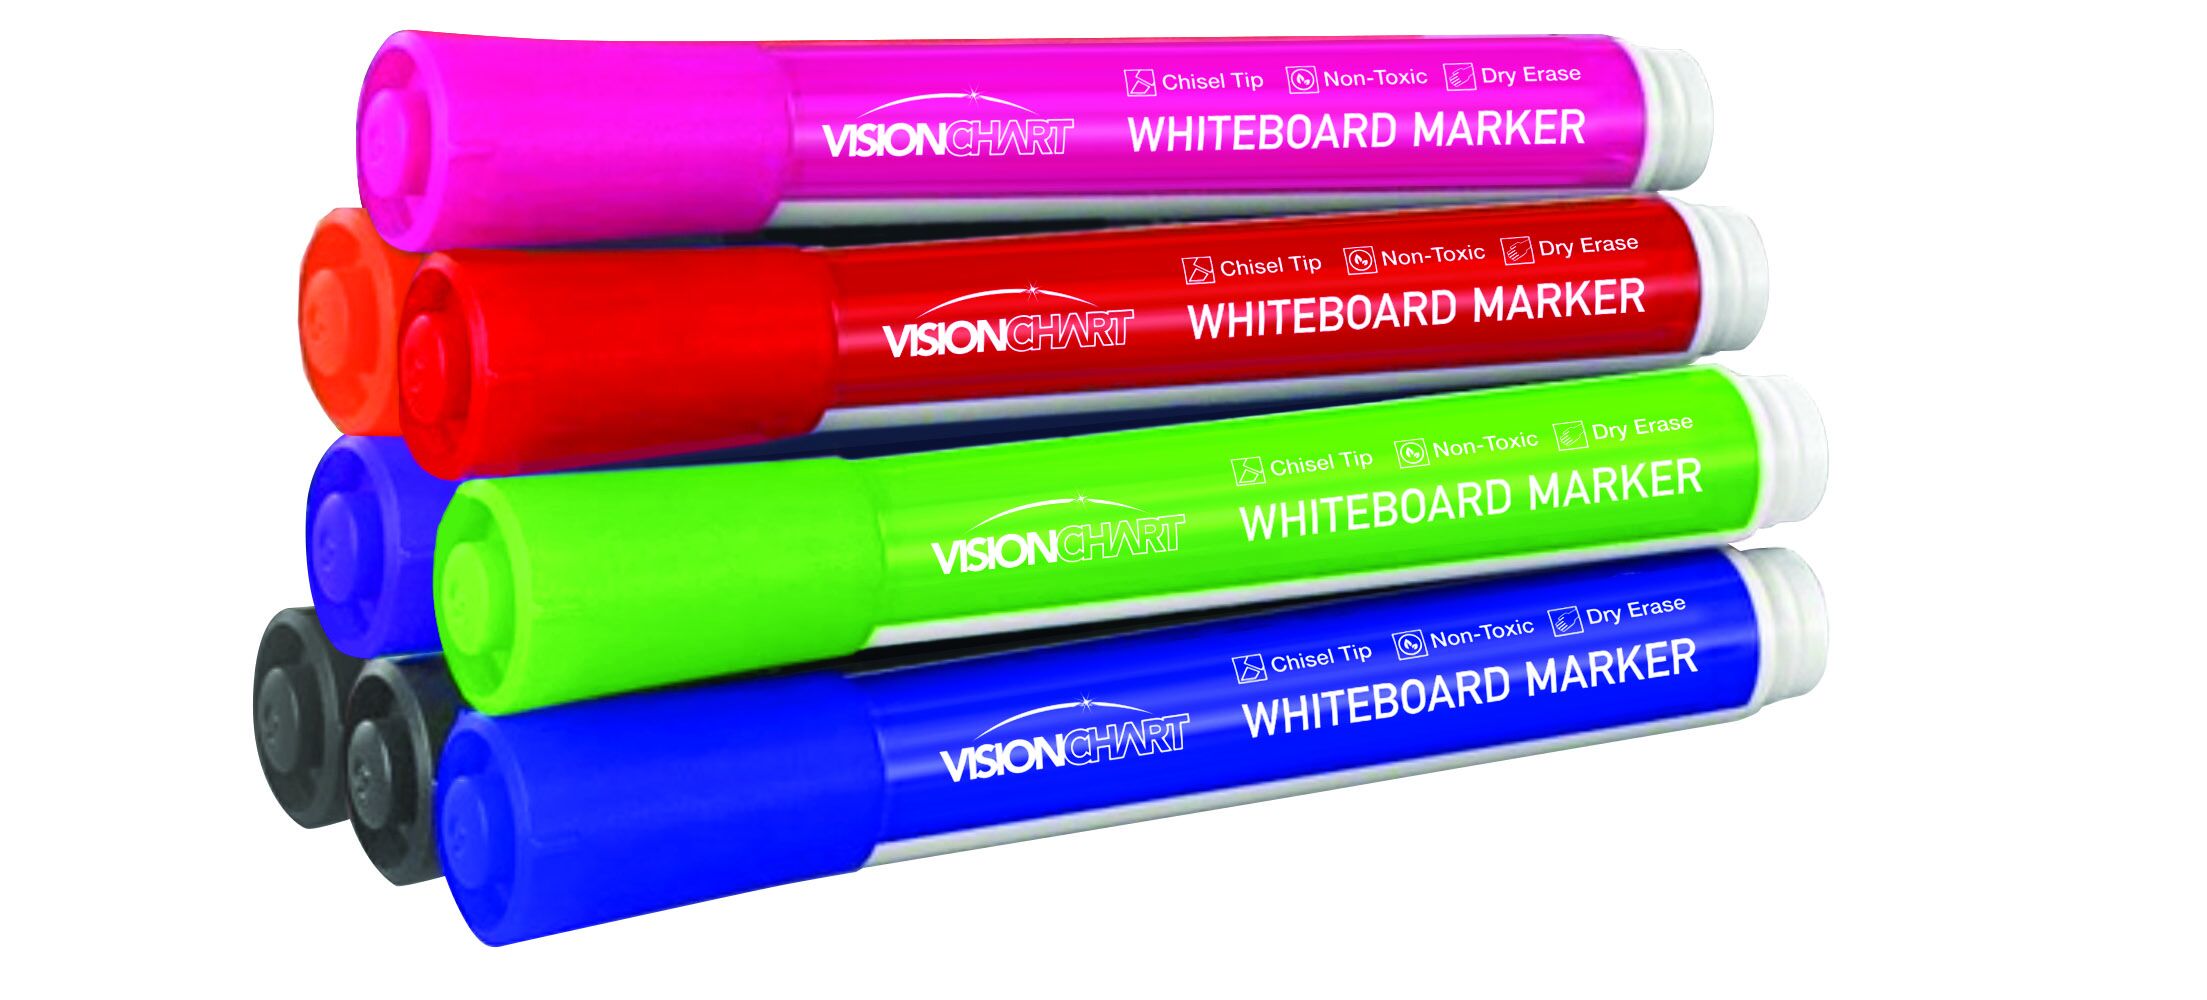 VA803 Whiteboard Markers